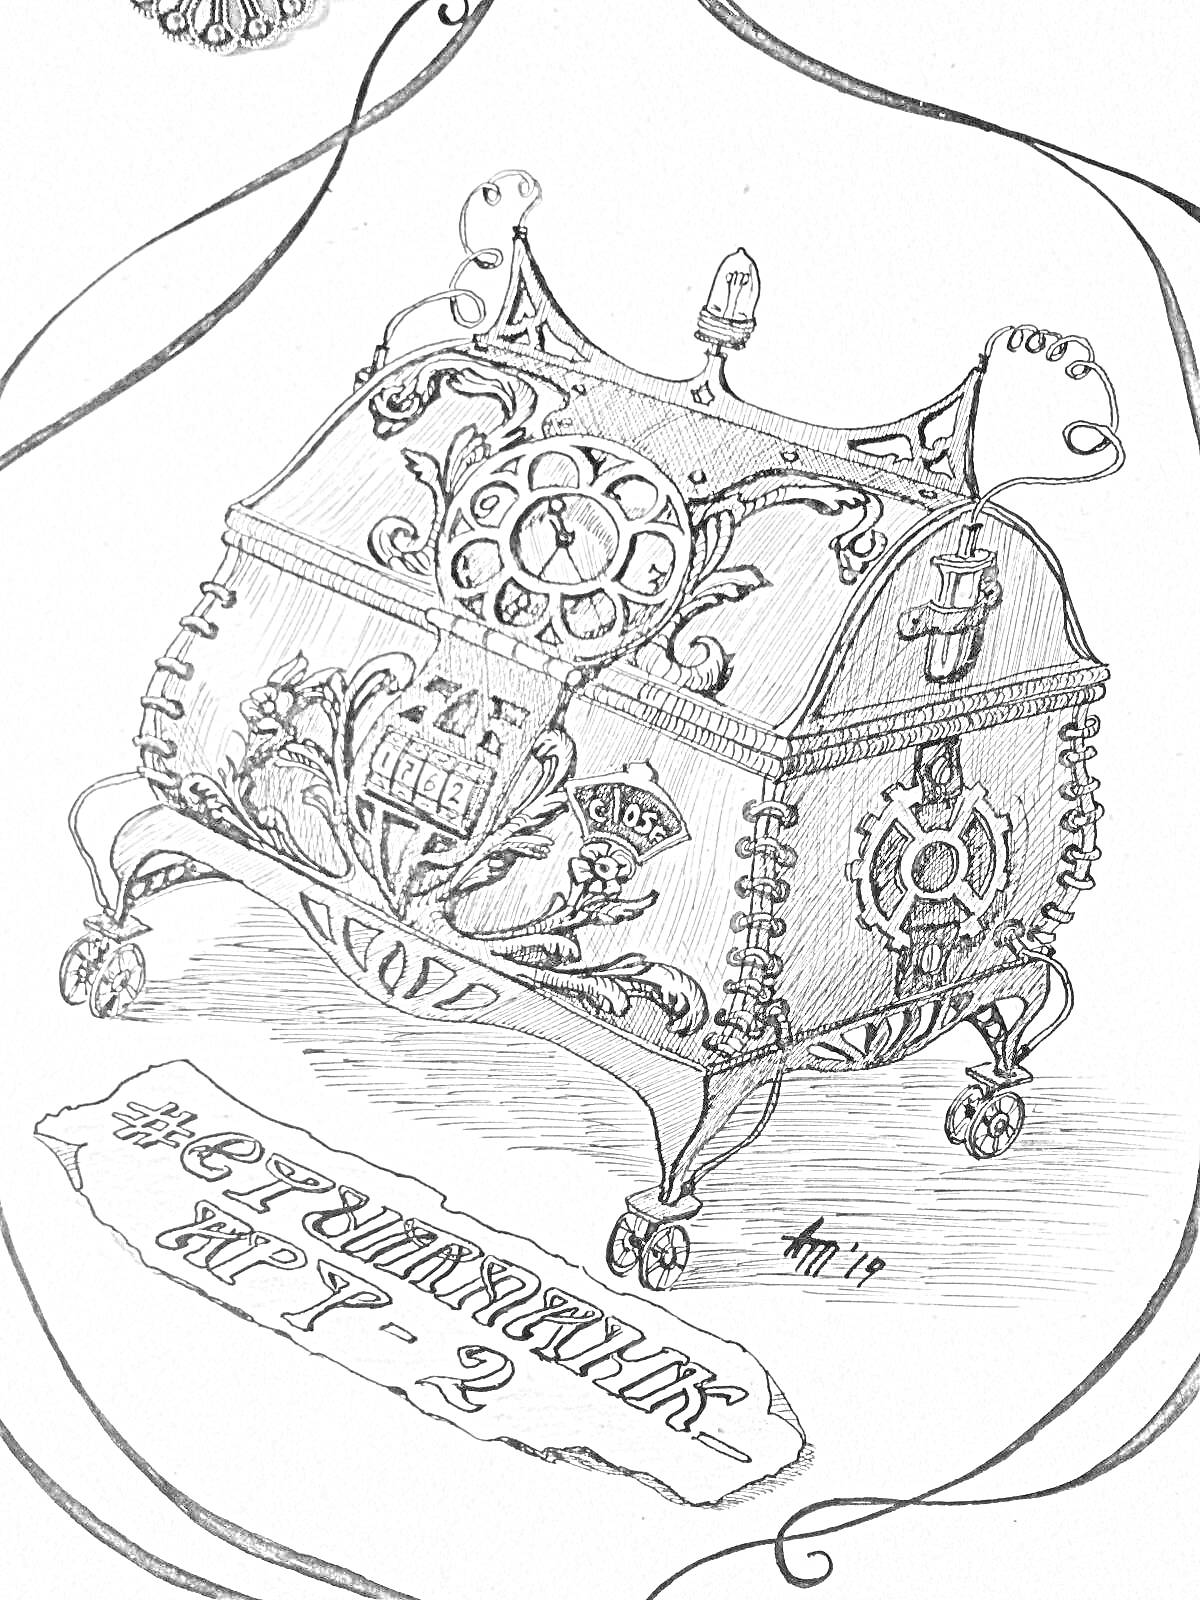 Музыкальная шкатулка с рисунками и надписями, украшенная различными узорами